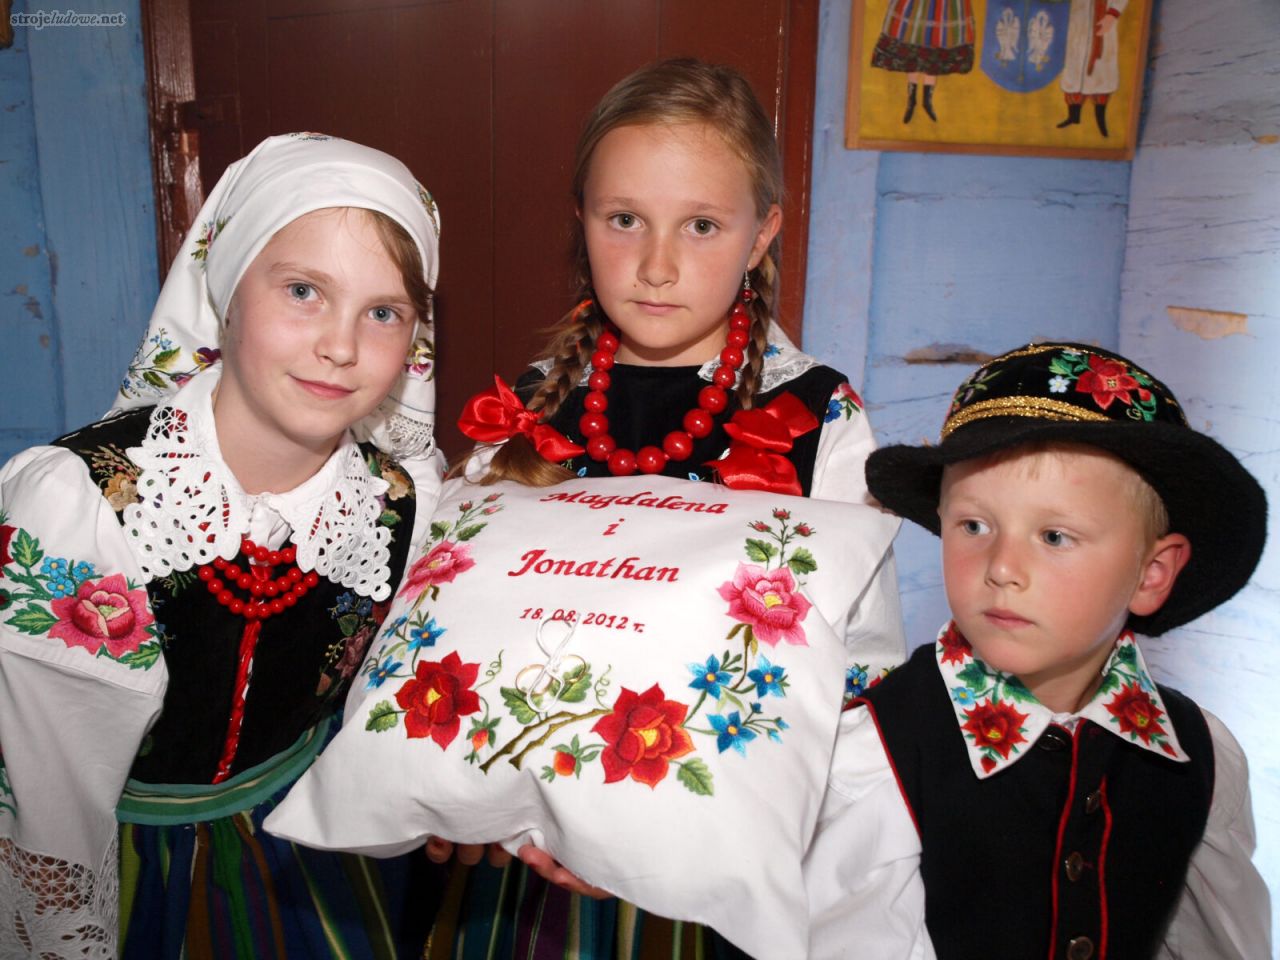 Dzieci w strojach łowickich, niosące poduszkę na obrączki ślubne dla pary młodej, Maurzyce, 2012, fot. M. Bartosiewicz